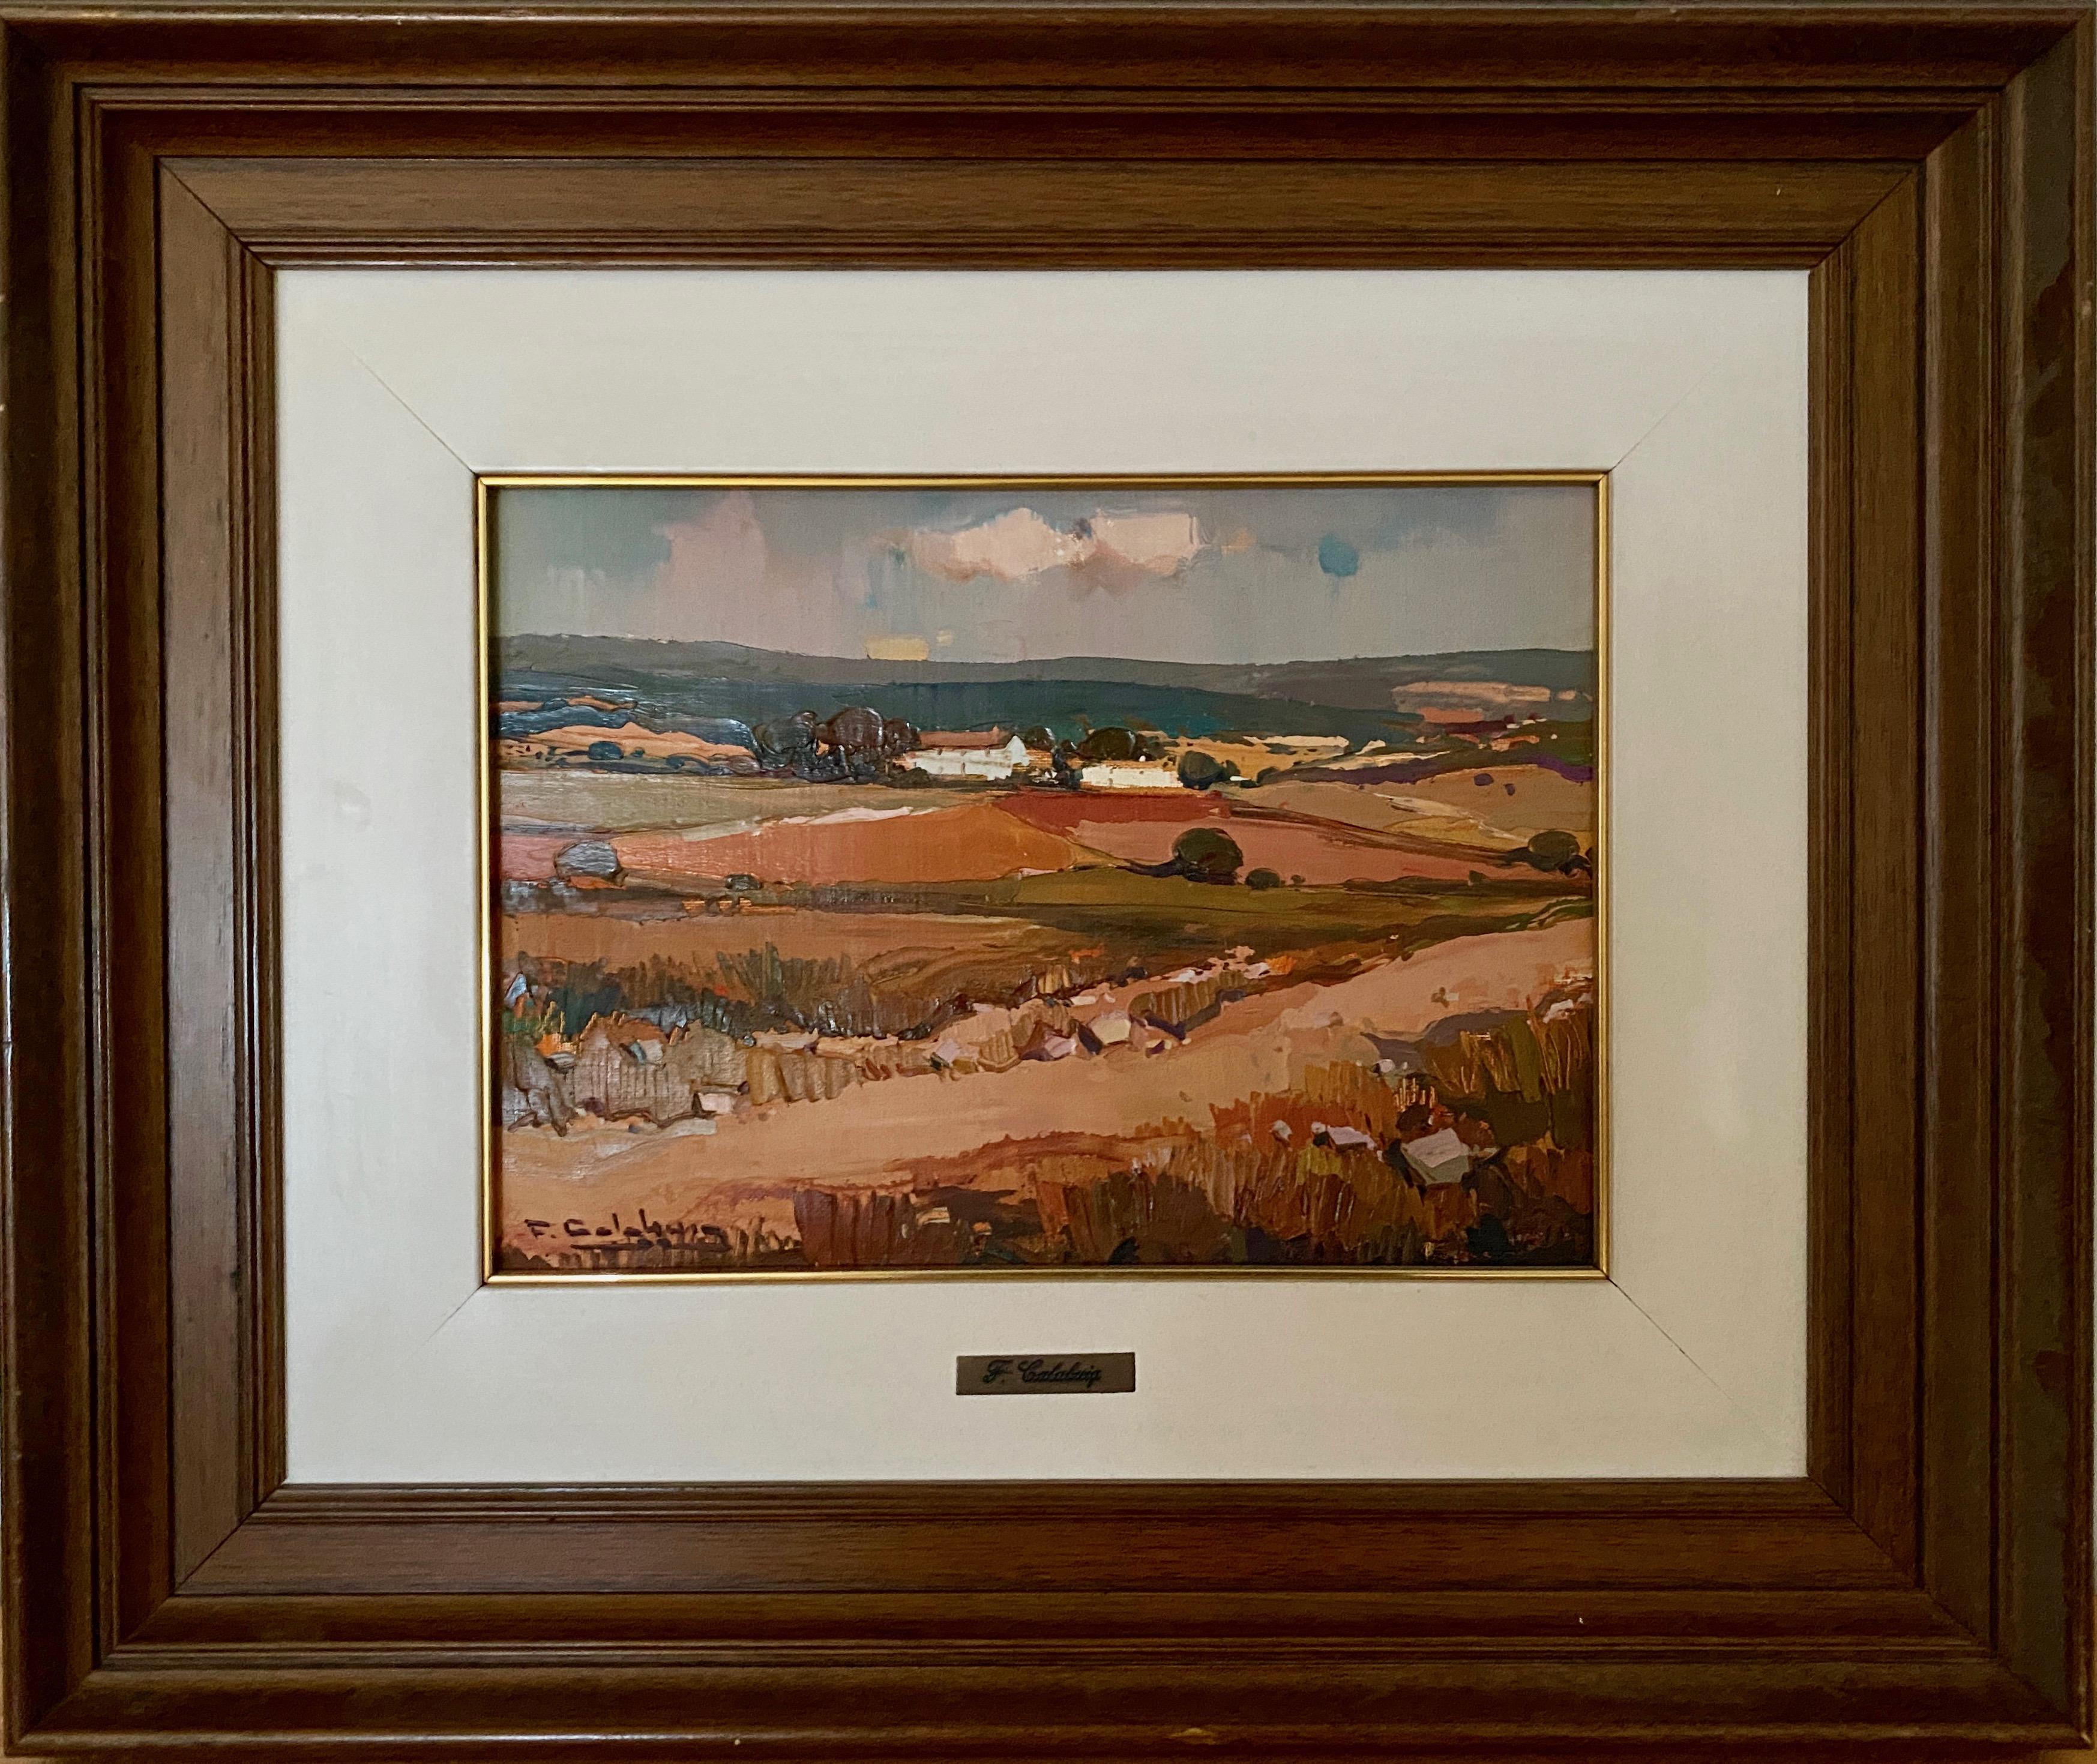 Braune ockerfarbene und graue Landschaften. Postimpressionistisches Öl – Painting von Francisco Calabuig